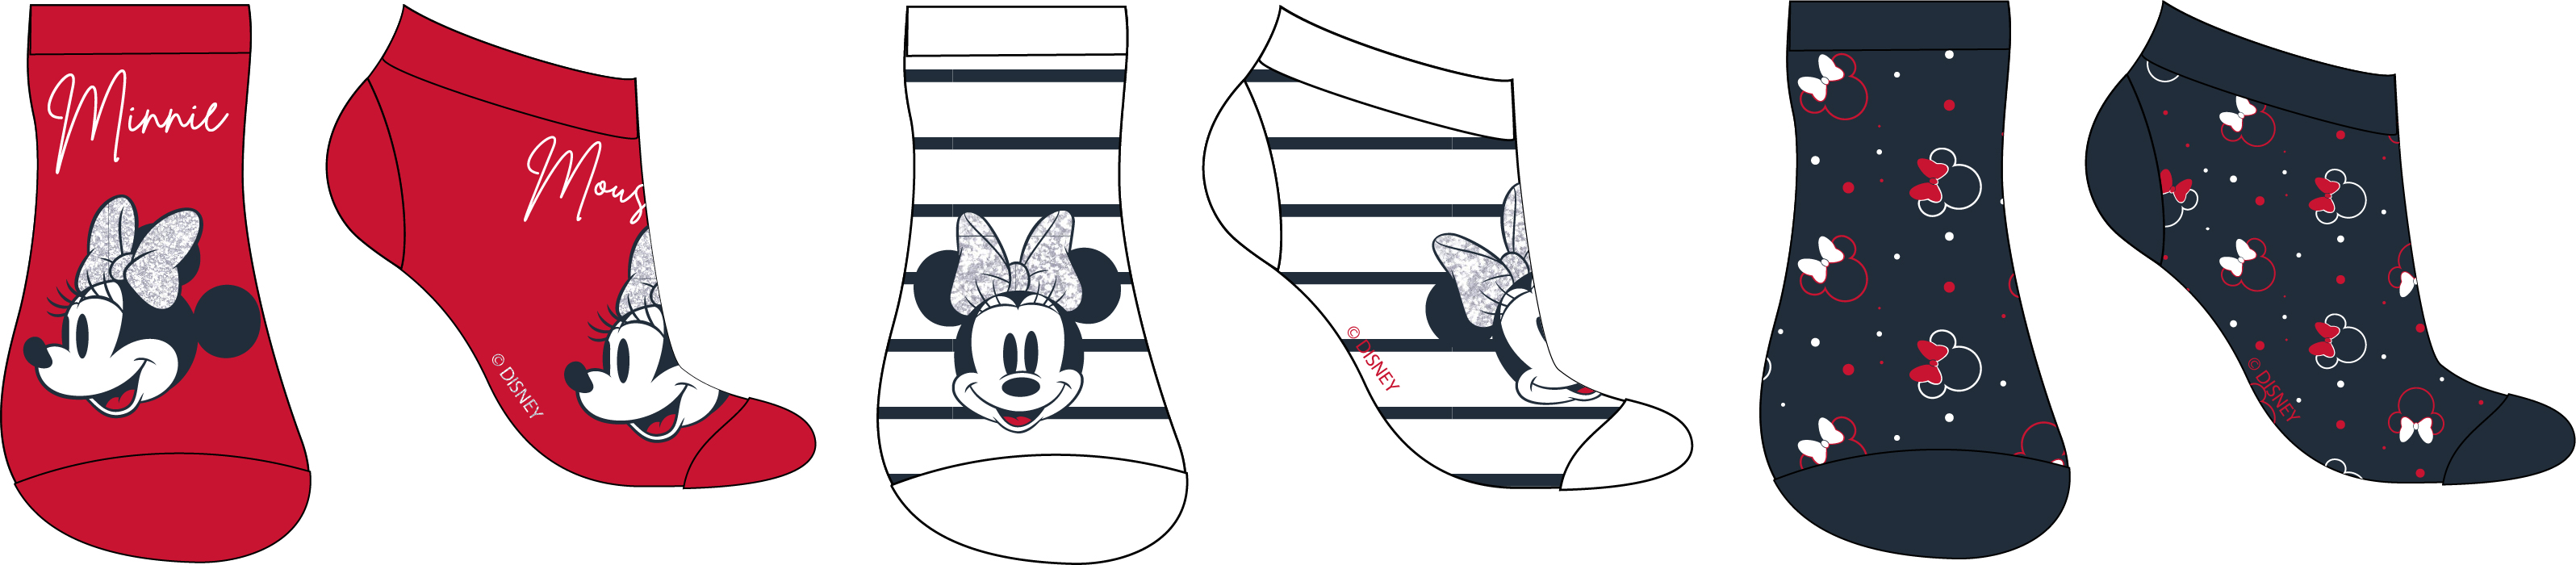 Minnie Mouse - licence Dívčí kotníkové ponožky - Minnie Mouse 5234C155, mix barev Barva: Mix barev, Velikost: 35-38